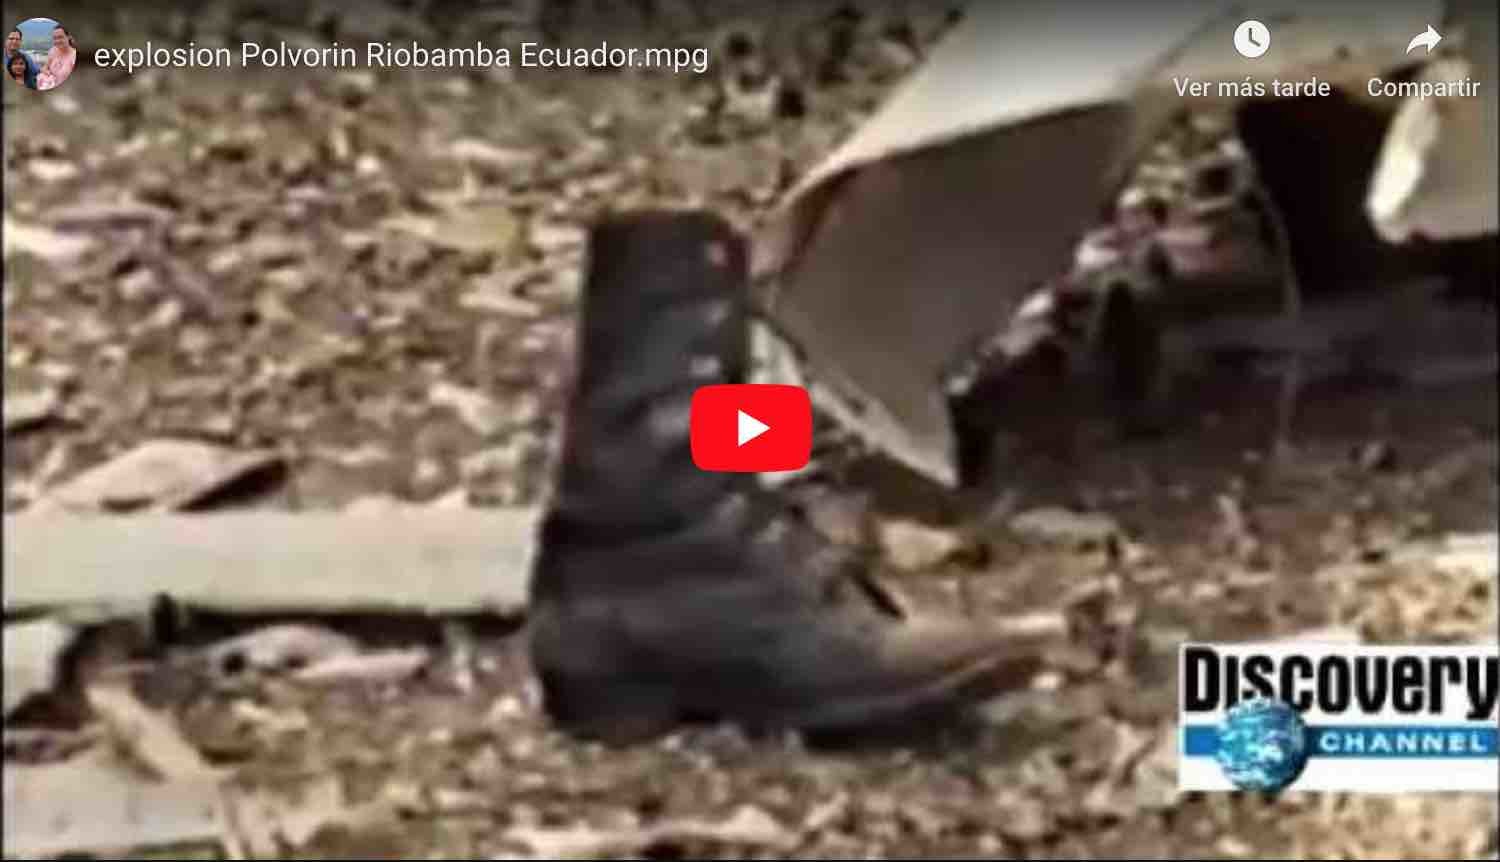 ? VIDEO | Explosion Polvorín Riobamba – Discovery Chanel